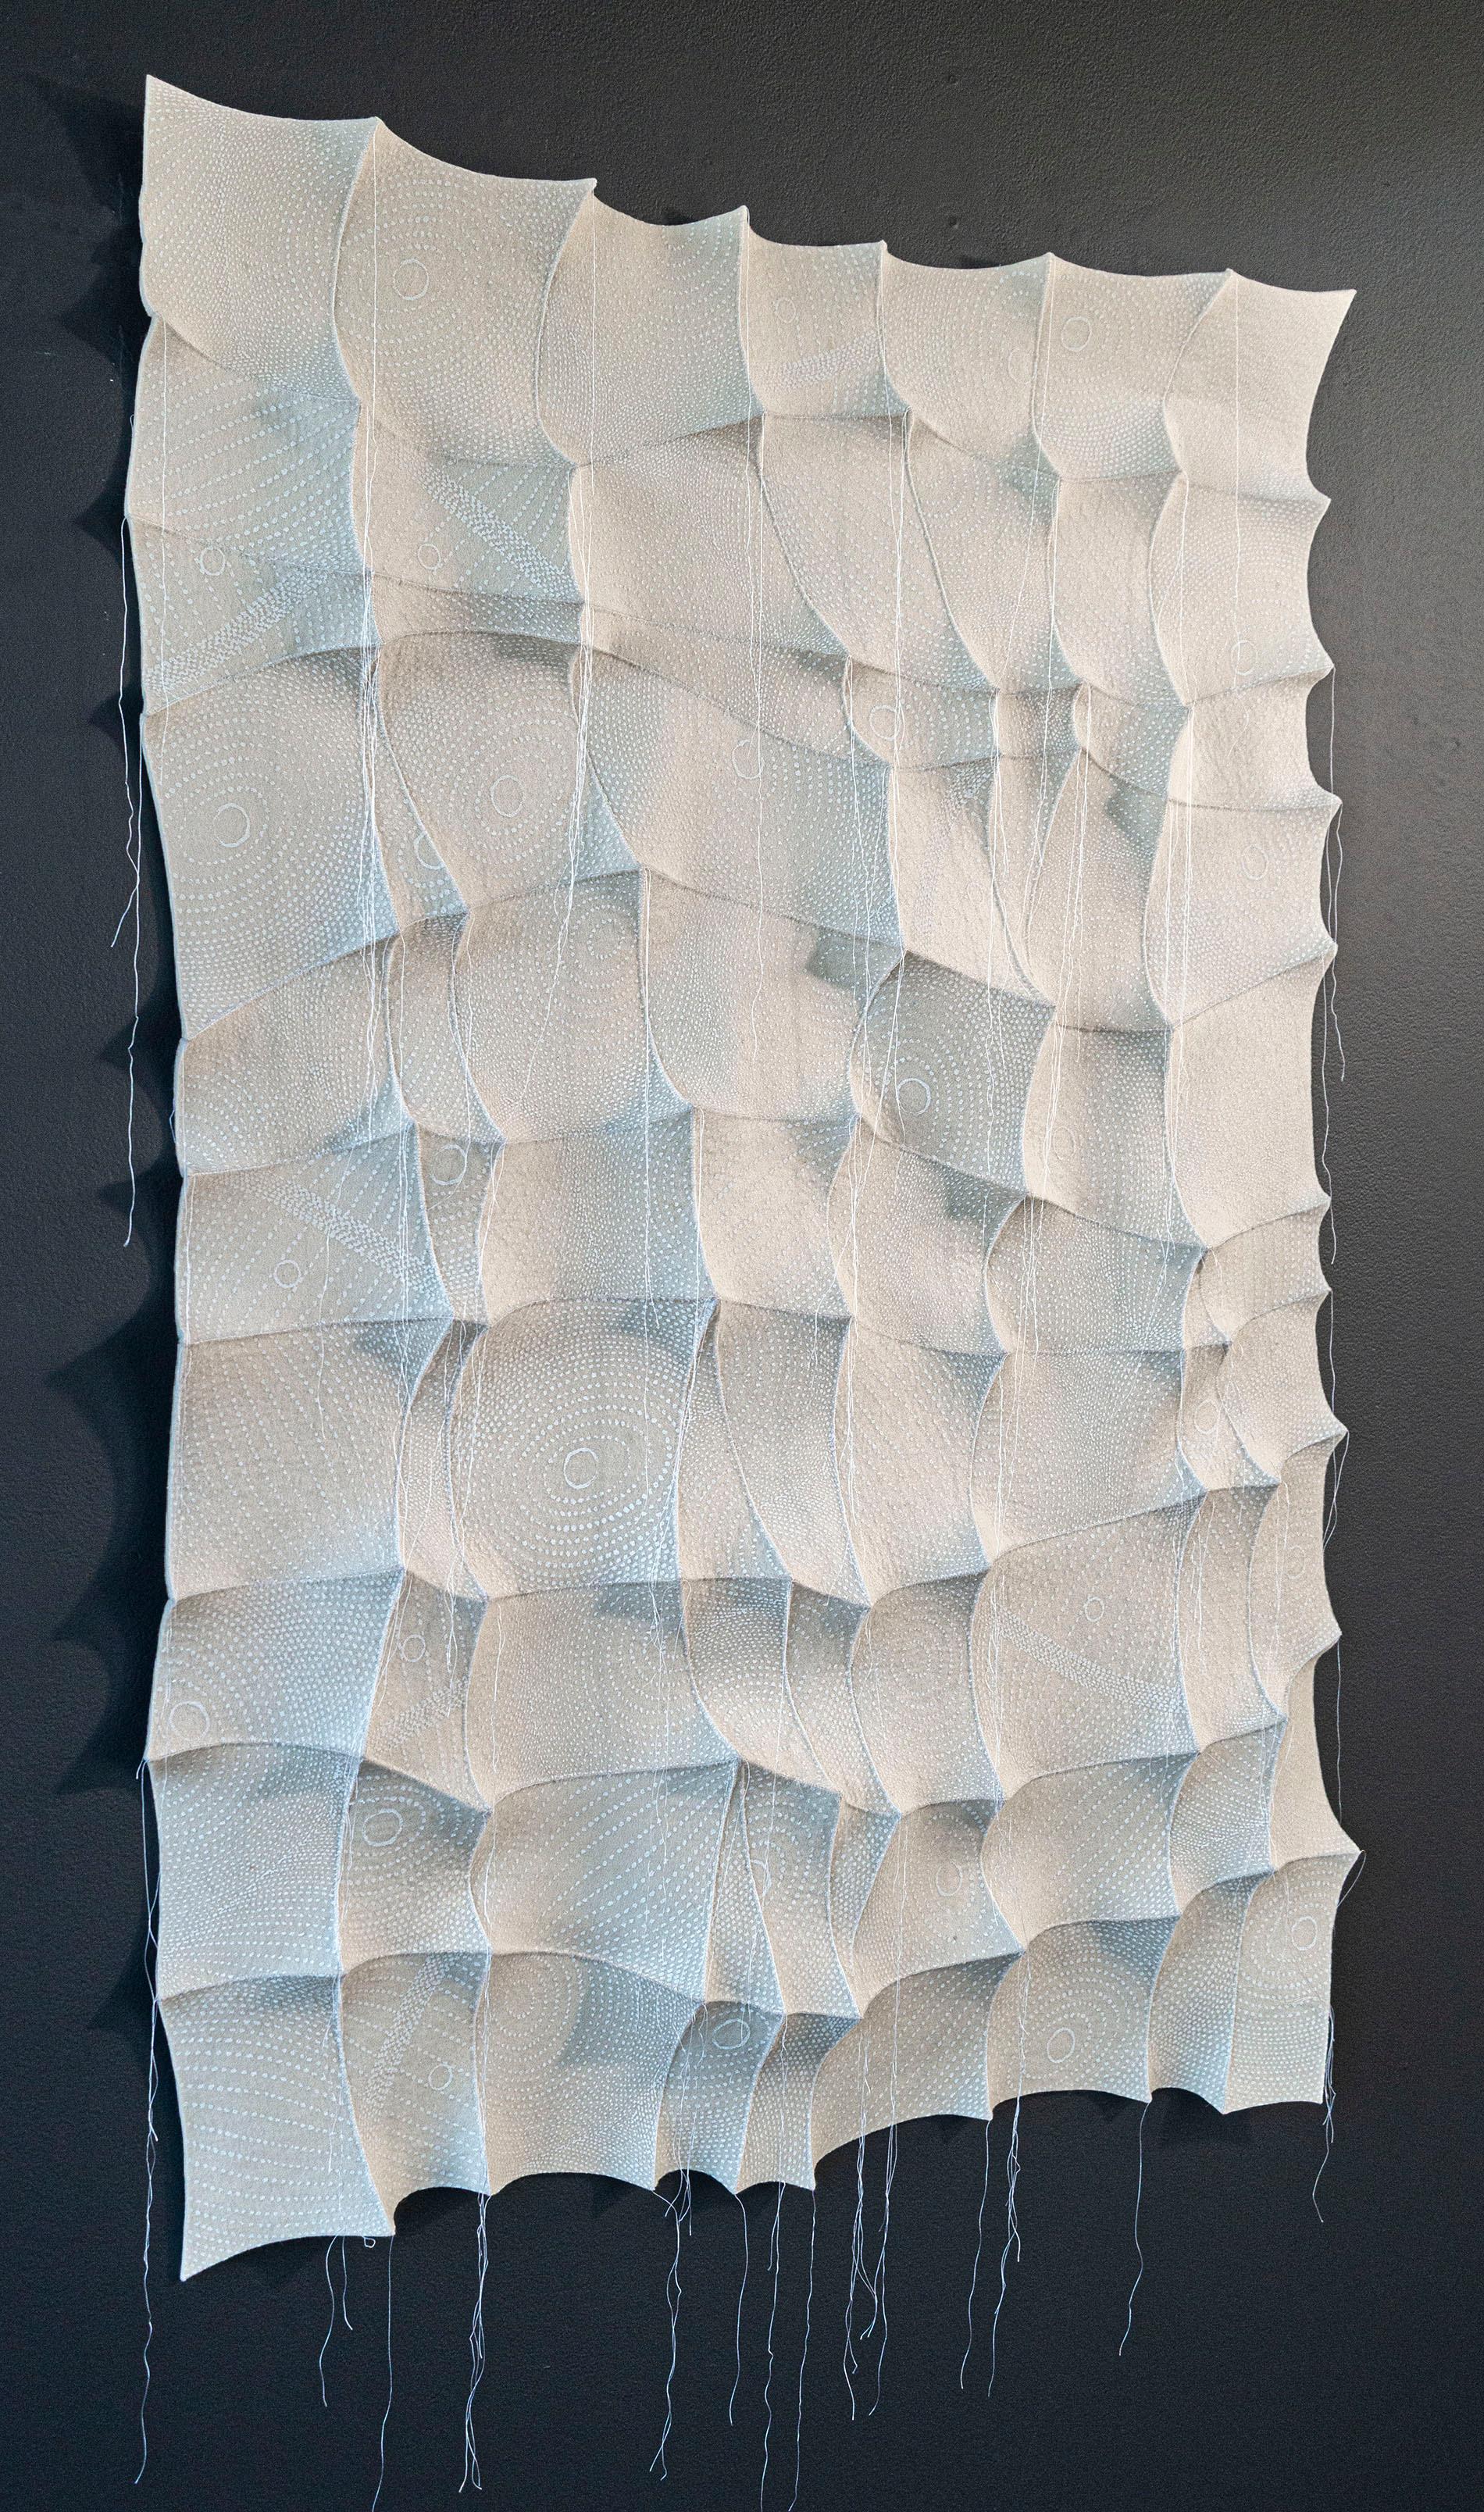 New Dawn – weiße, strukturierte, biomorphe, abstrakte, industrielle Filz-Wandskulptur (Zeitgenössisch), Mixed Media Art, von Chung-Im Kim